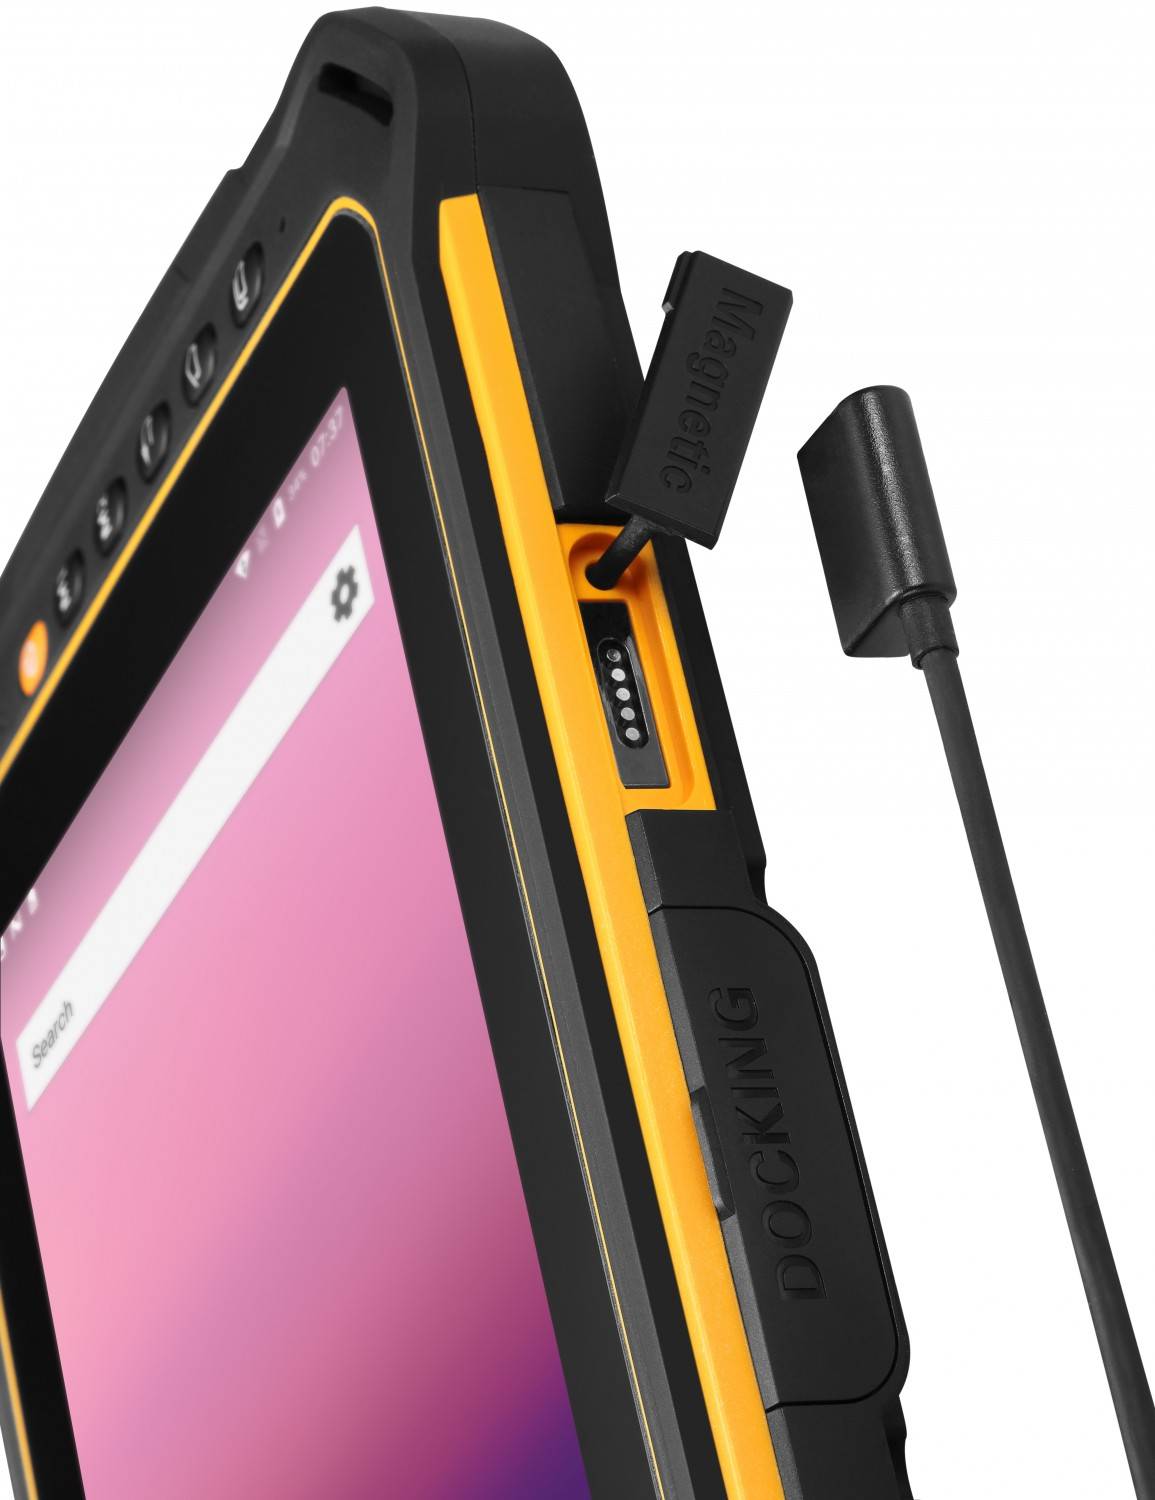 mobile Devices RugGear RG910: Ein Tablet für harte Outdoor-Einsätze - Sturzsicher bis 1,2 Meter - News, Bild 2